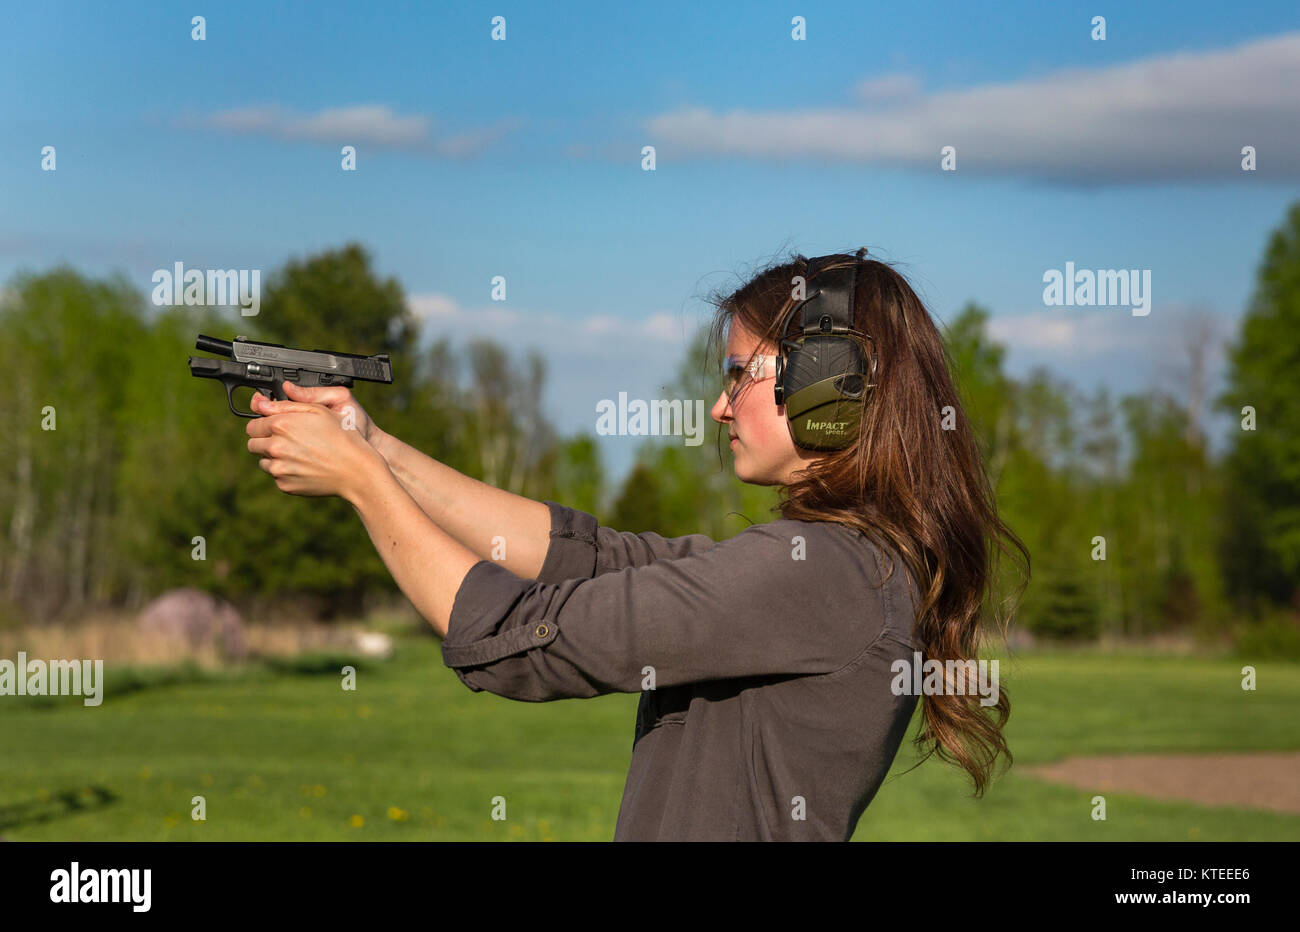 Joven dispara un Smith & Wesson M&P pistola Escudo Foto de stock